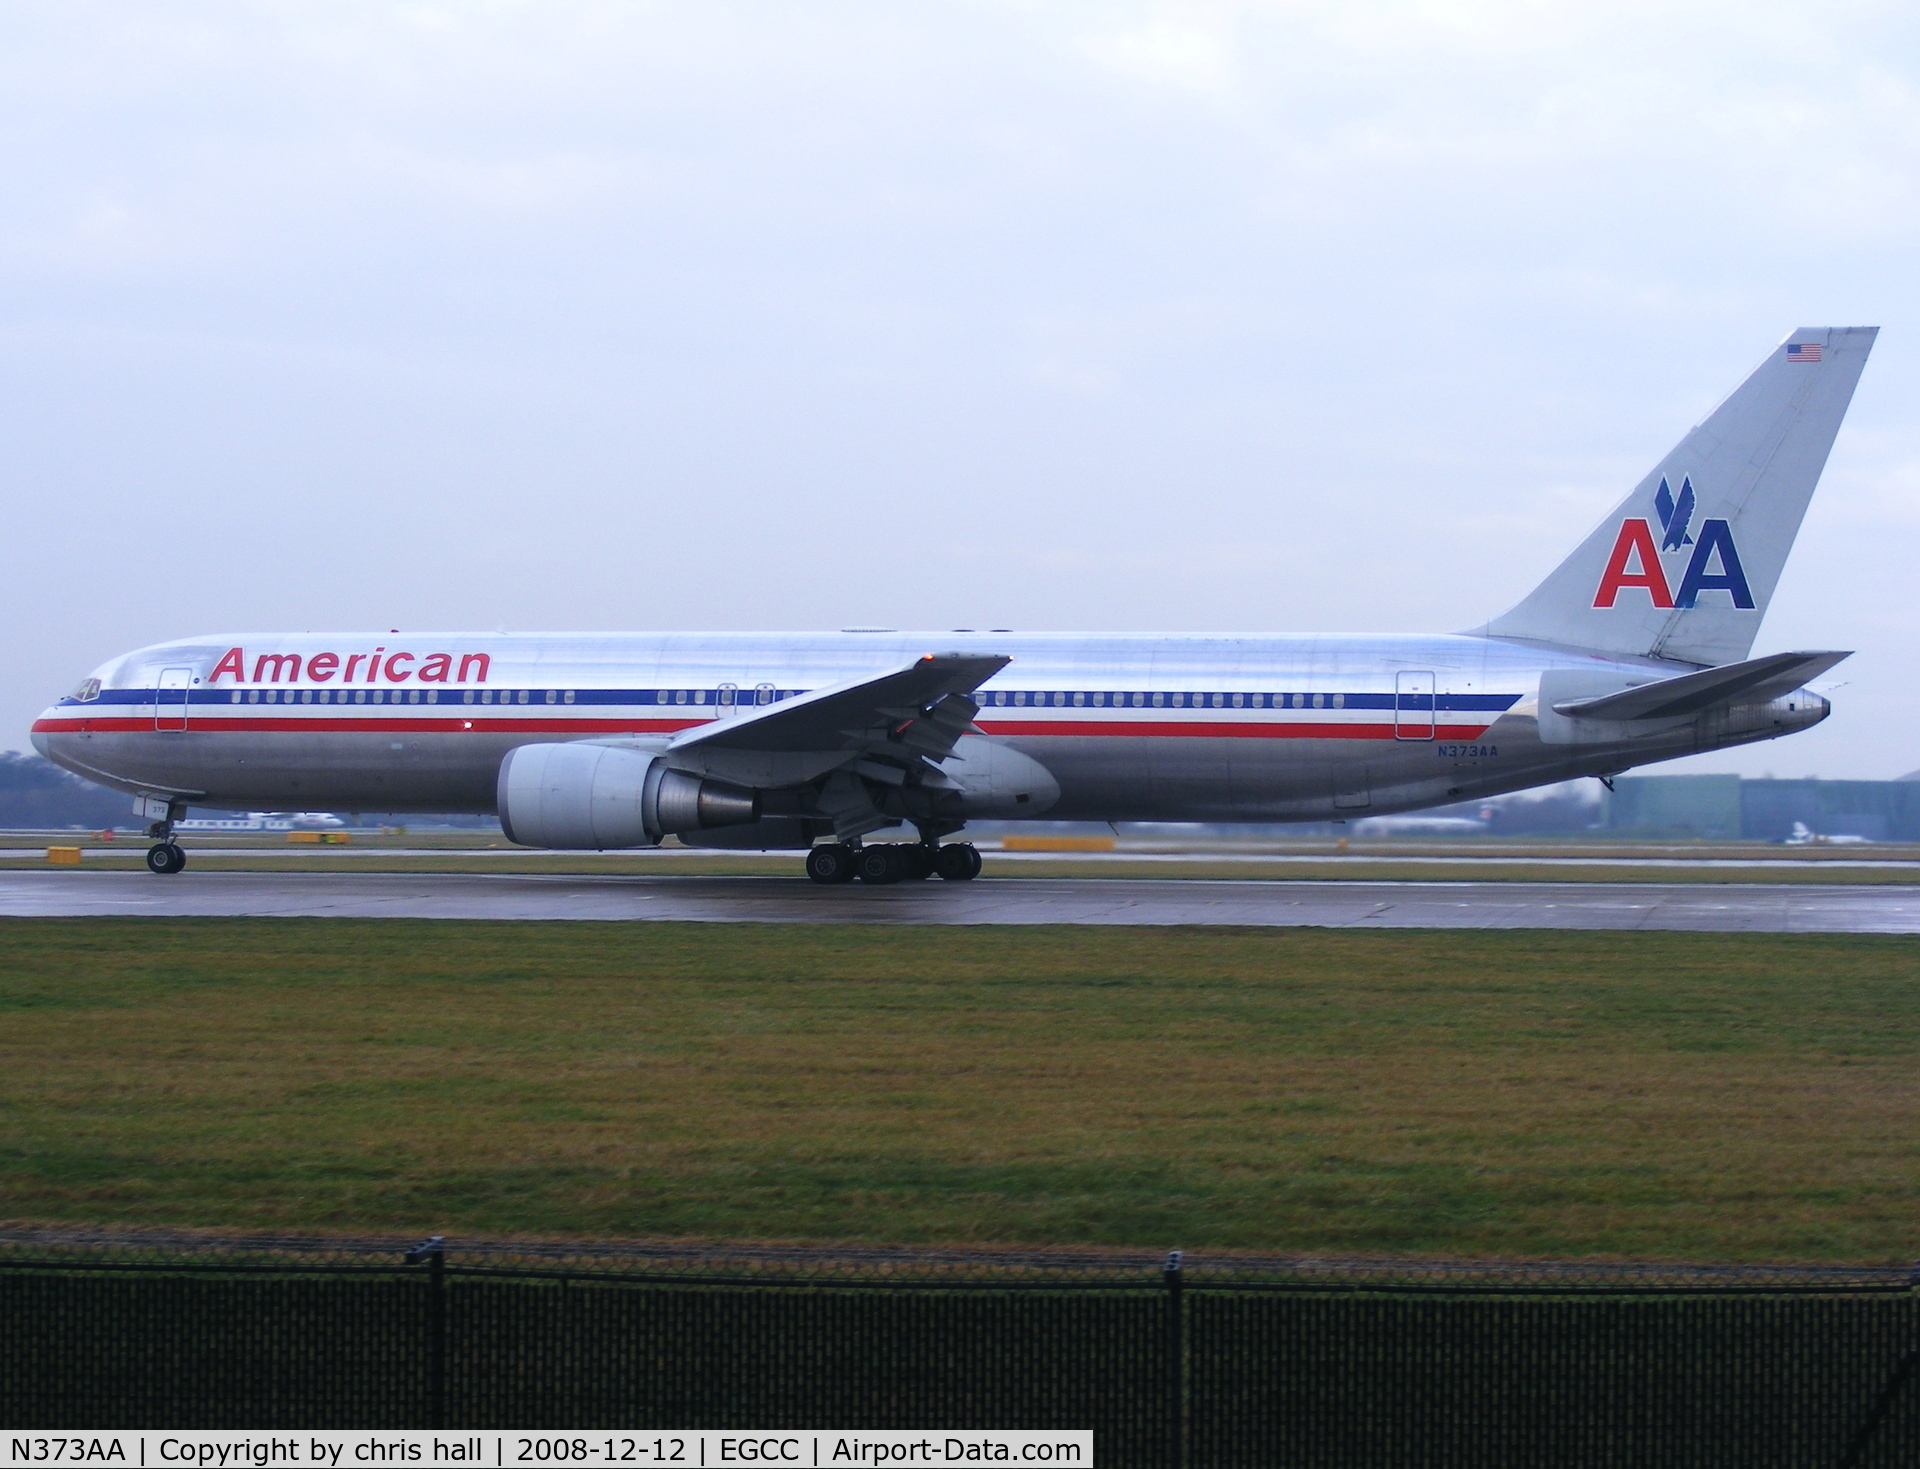 N373AA, 1992 Boeing 767-323 C/N 25200, America Airlines